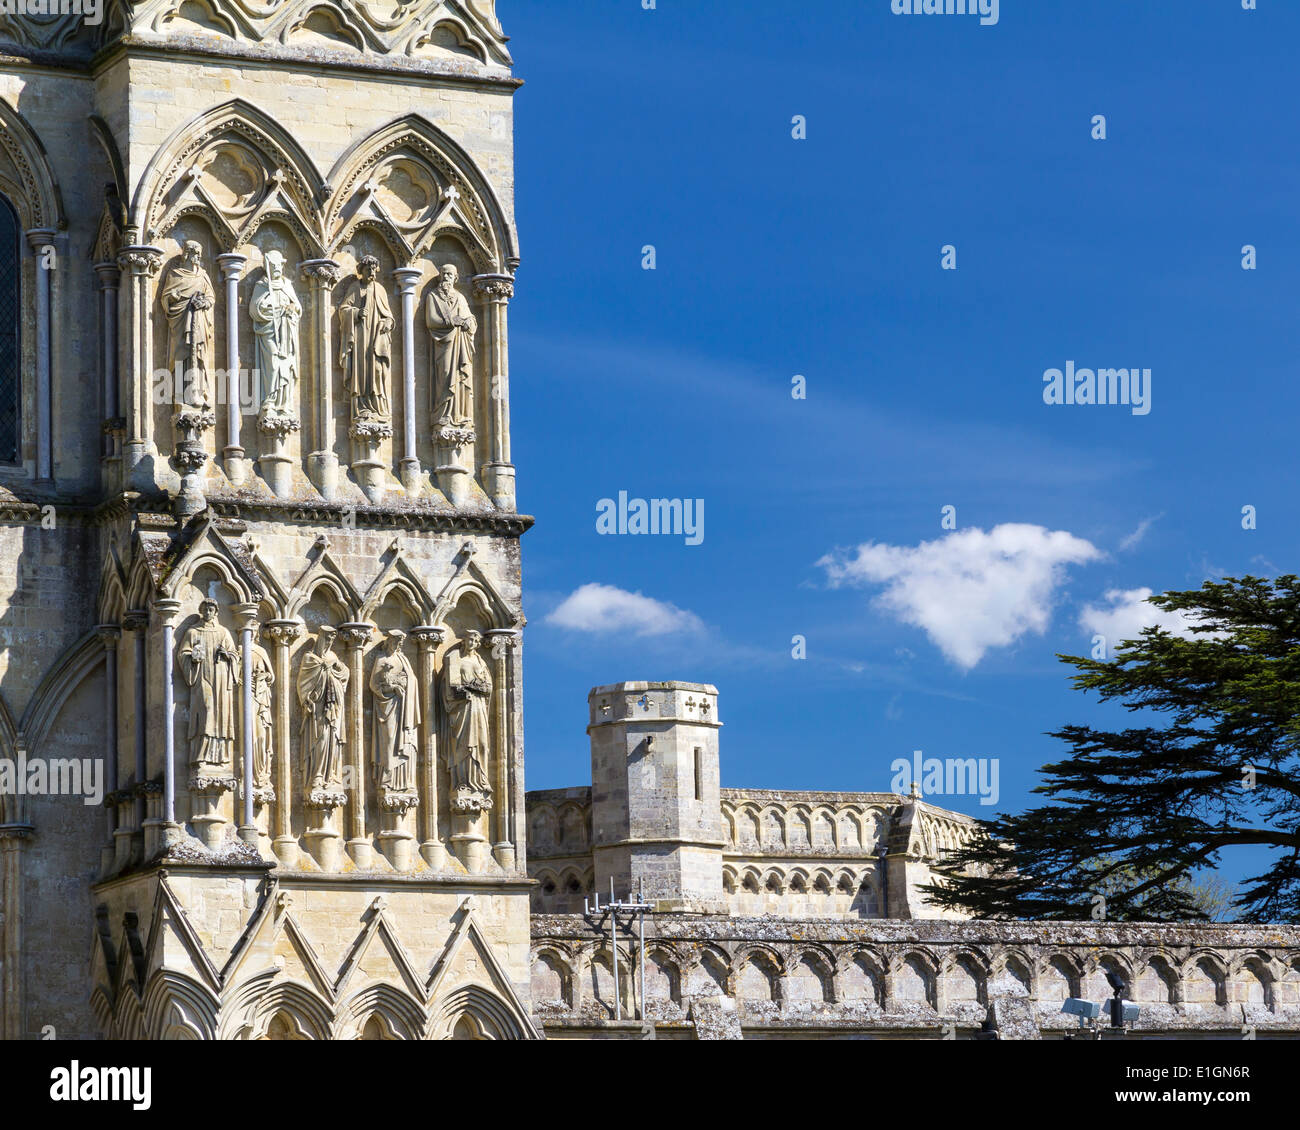 Début de style gothique anglais La cathédrale de Salisbury. Europe Royaume-Uni Angleterre Wiltshire Banque D'Images